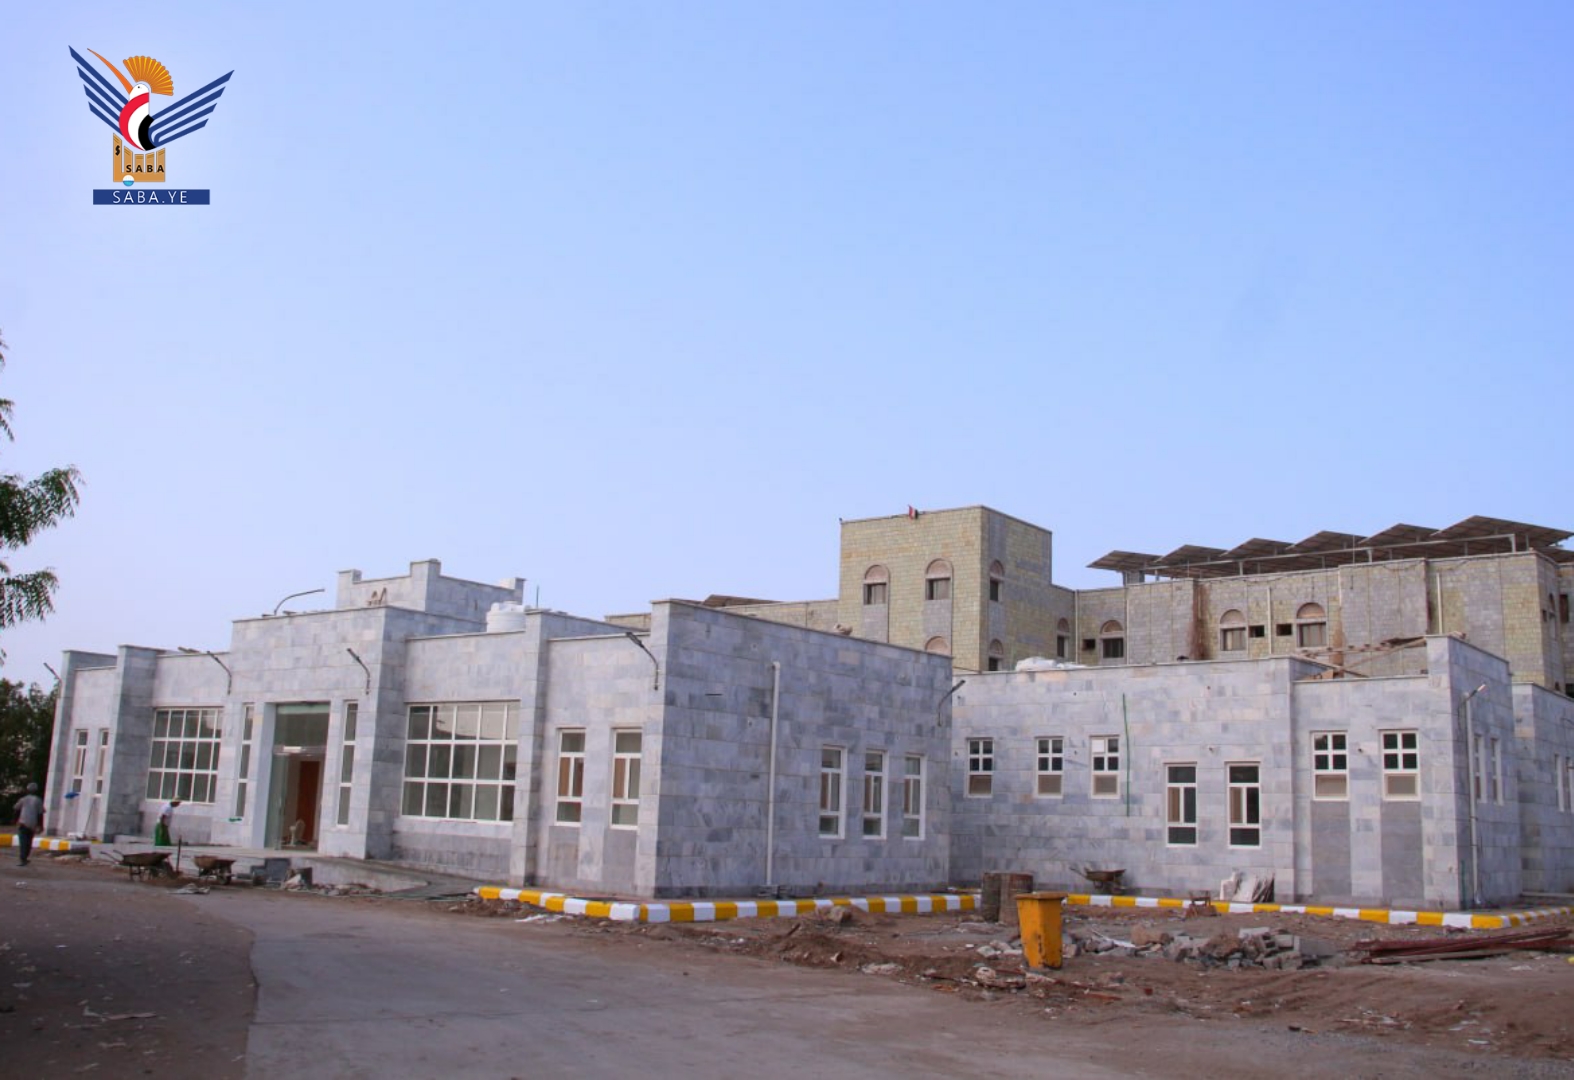 هيئة مستشفى الثورة في الحديدة تتنفس الصعداء بإنجاز مشاريع طموحة